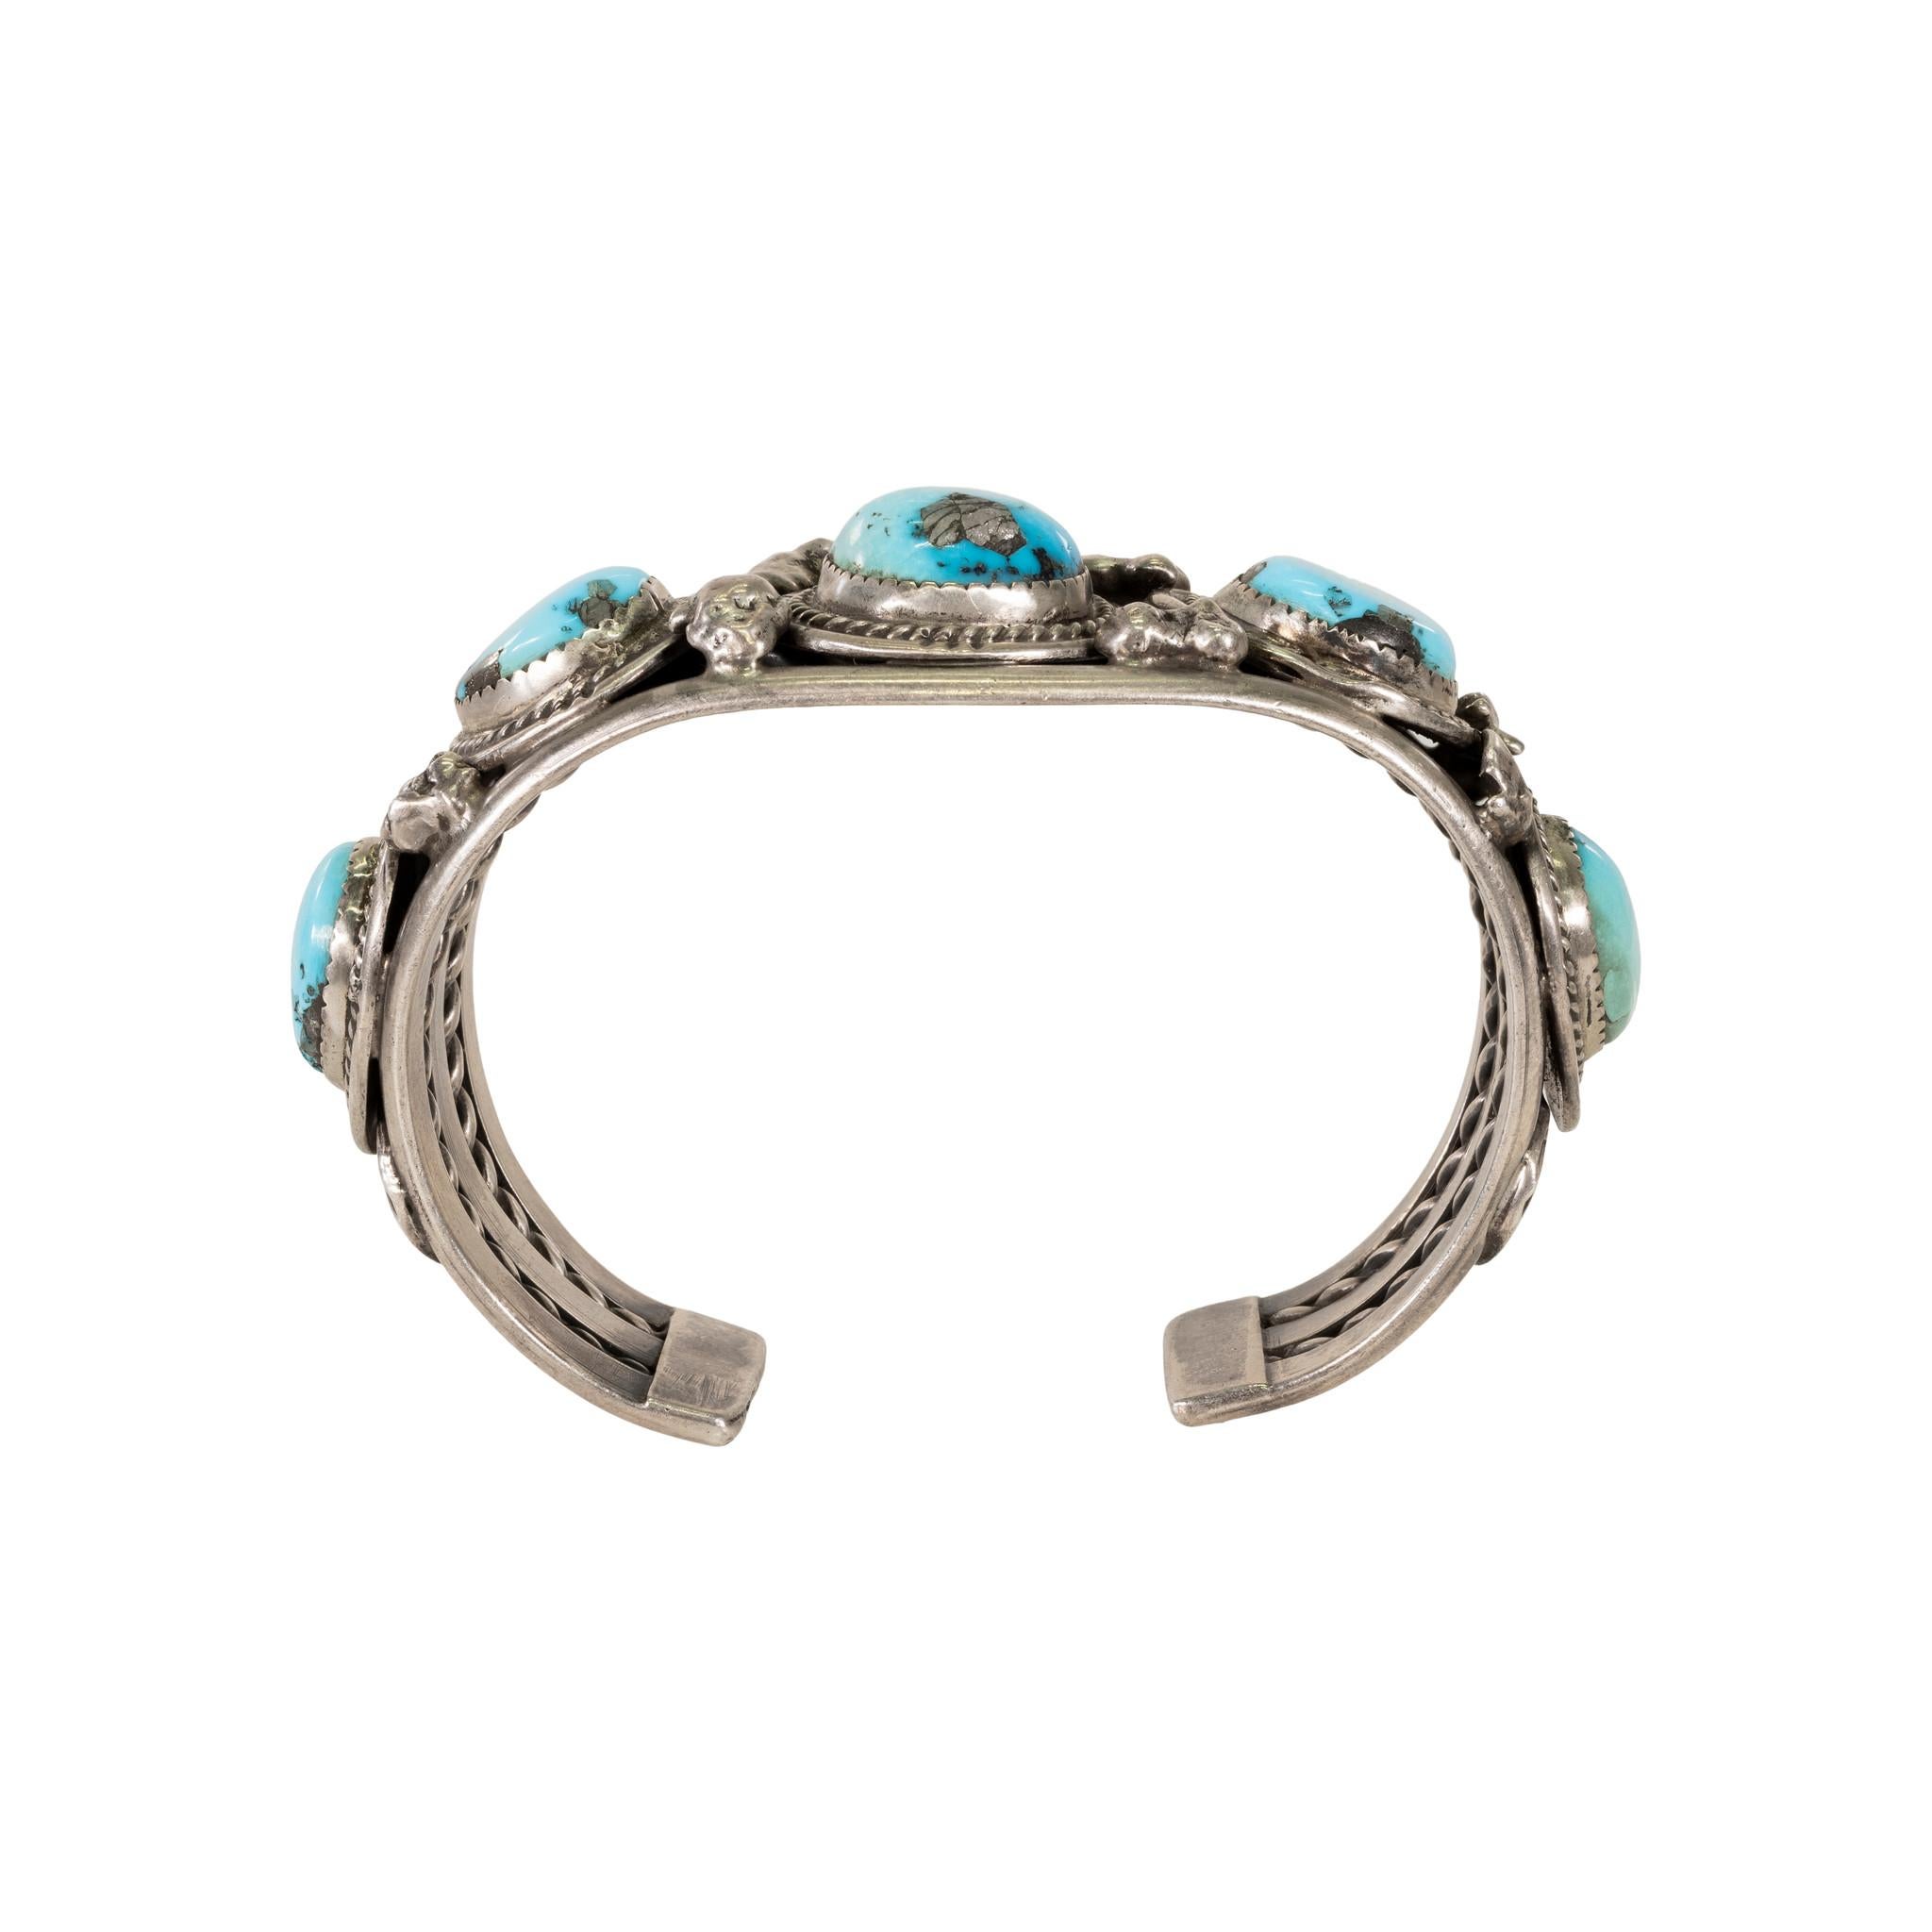 Bracelet en turquoise Navajo Kingman avec cinq pépites entourées d'une bordure en corde torsadée. La turquoise est une superbe couleur bleu clair d'excellente qualité. 

PÉRIODE : Après 1950
ORIGINE : Navajo, Sud-Ouest
TAILLE : 7